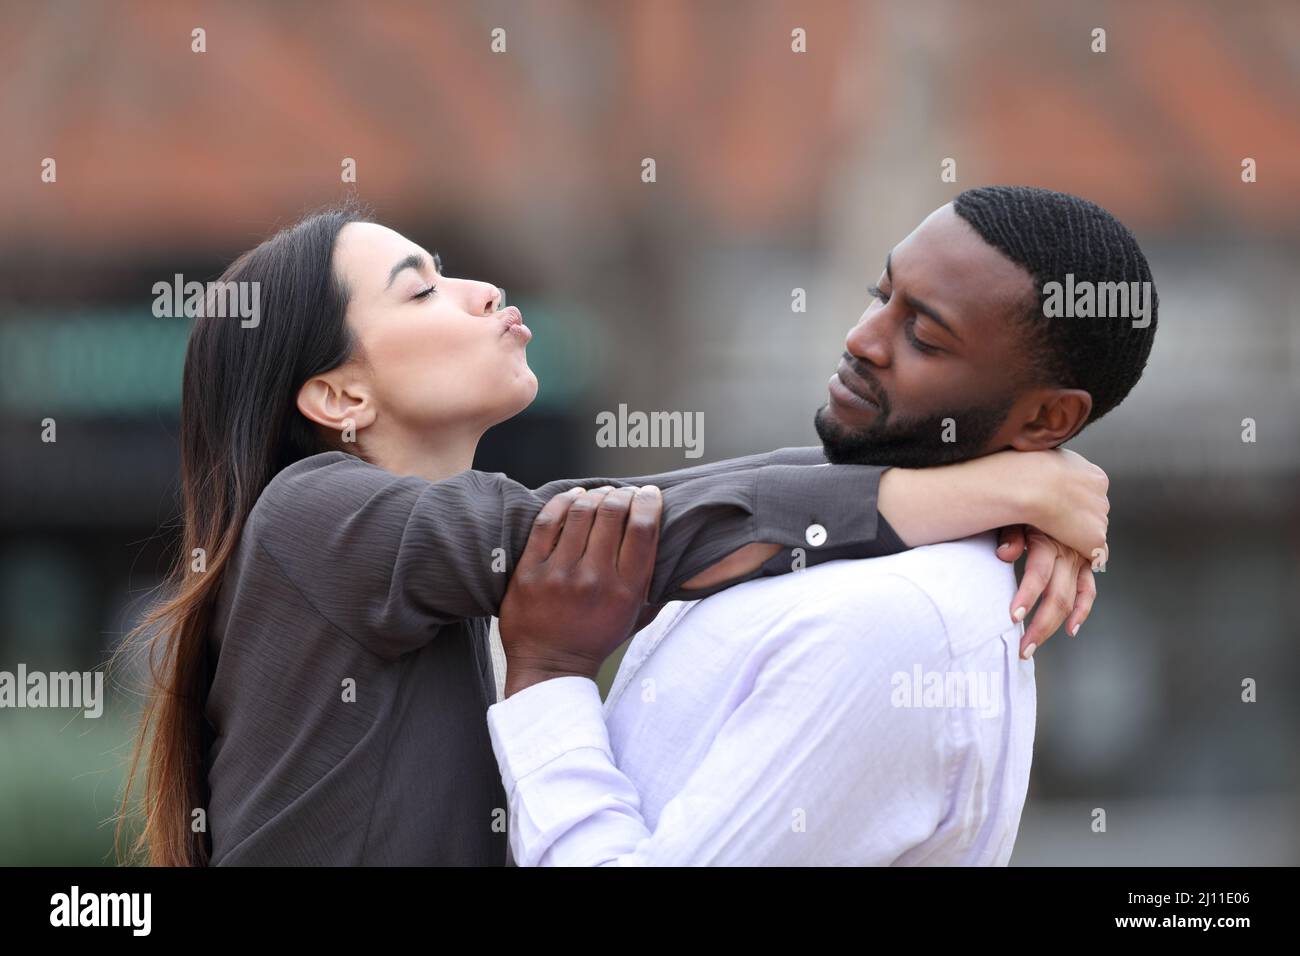 Ritratto laterale di una donna ossessionata che cerca di baciare un uomo con la pelle nera che la rifiuta per strada Foto Stock